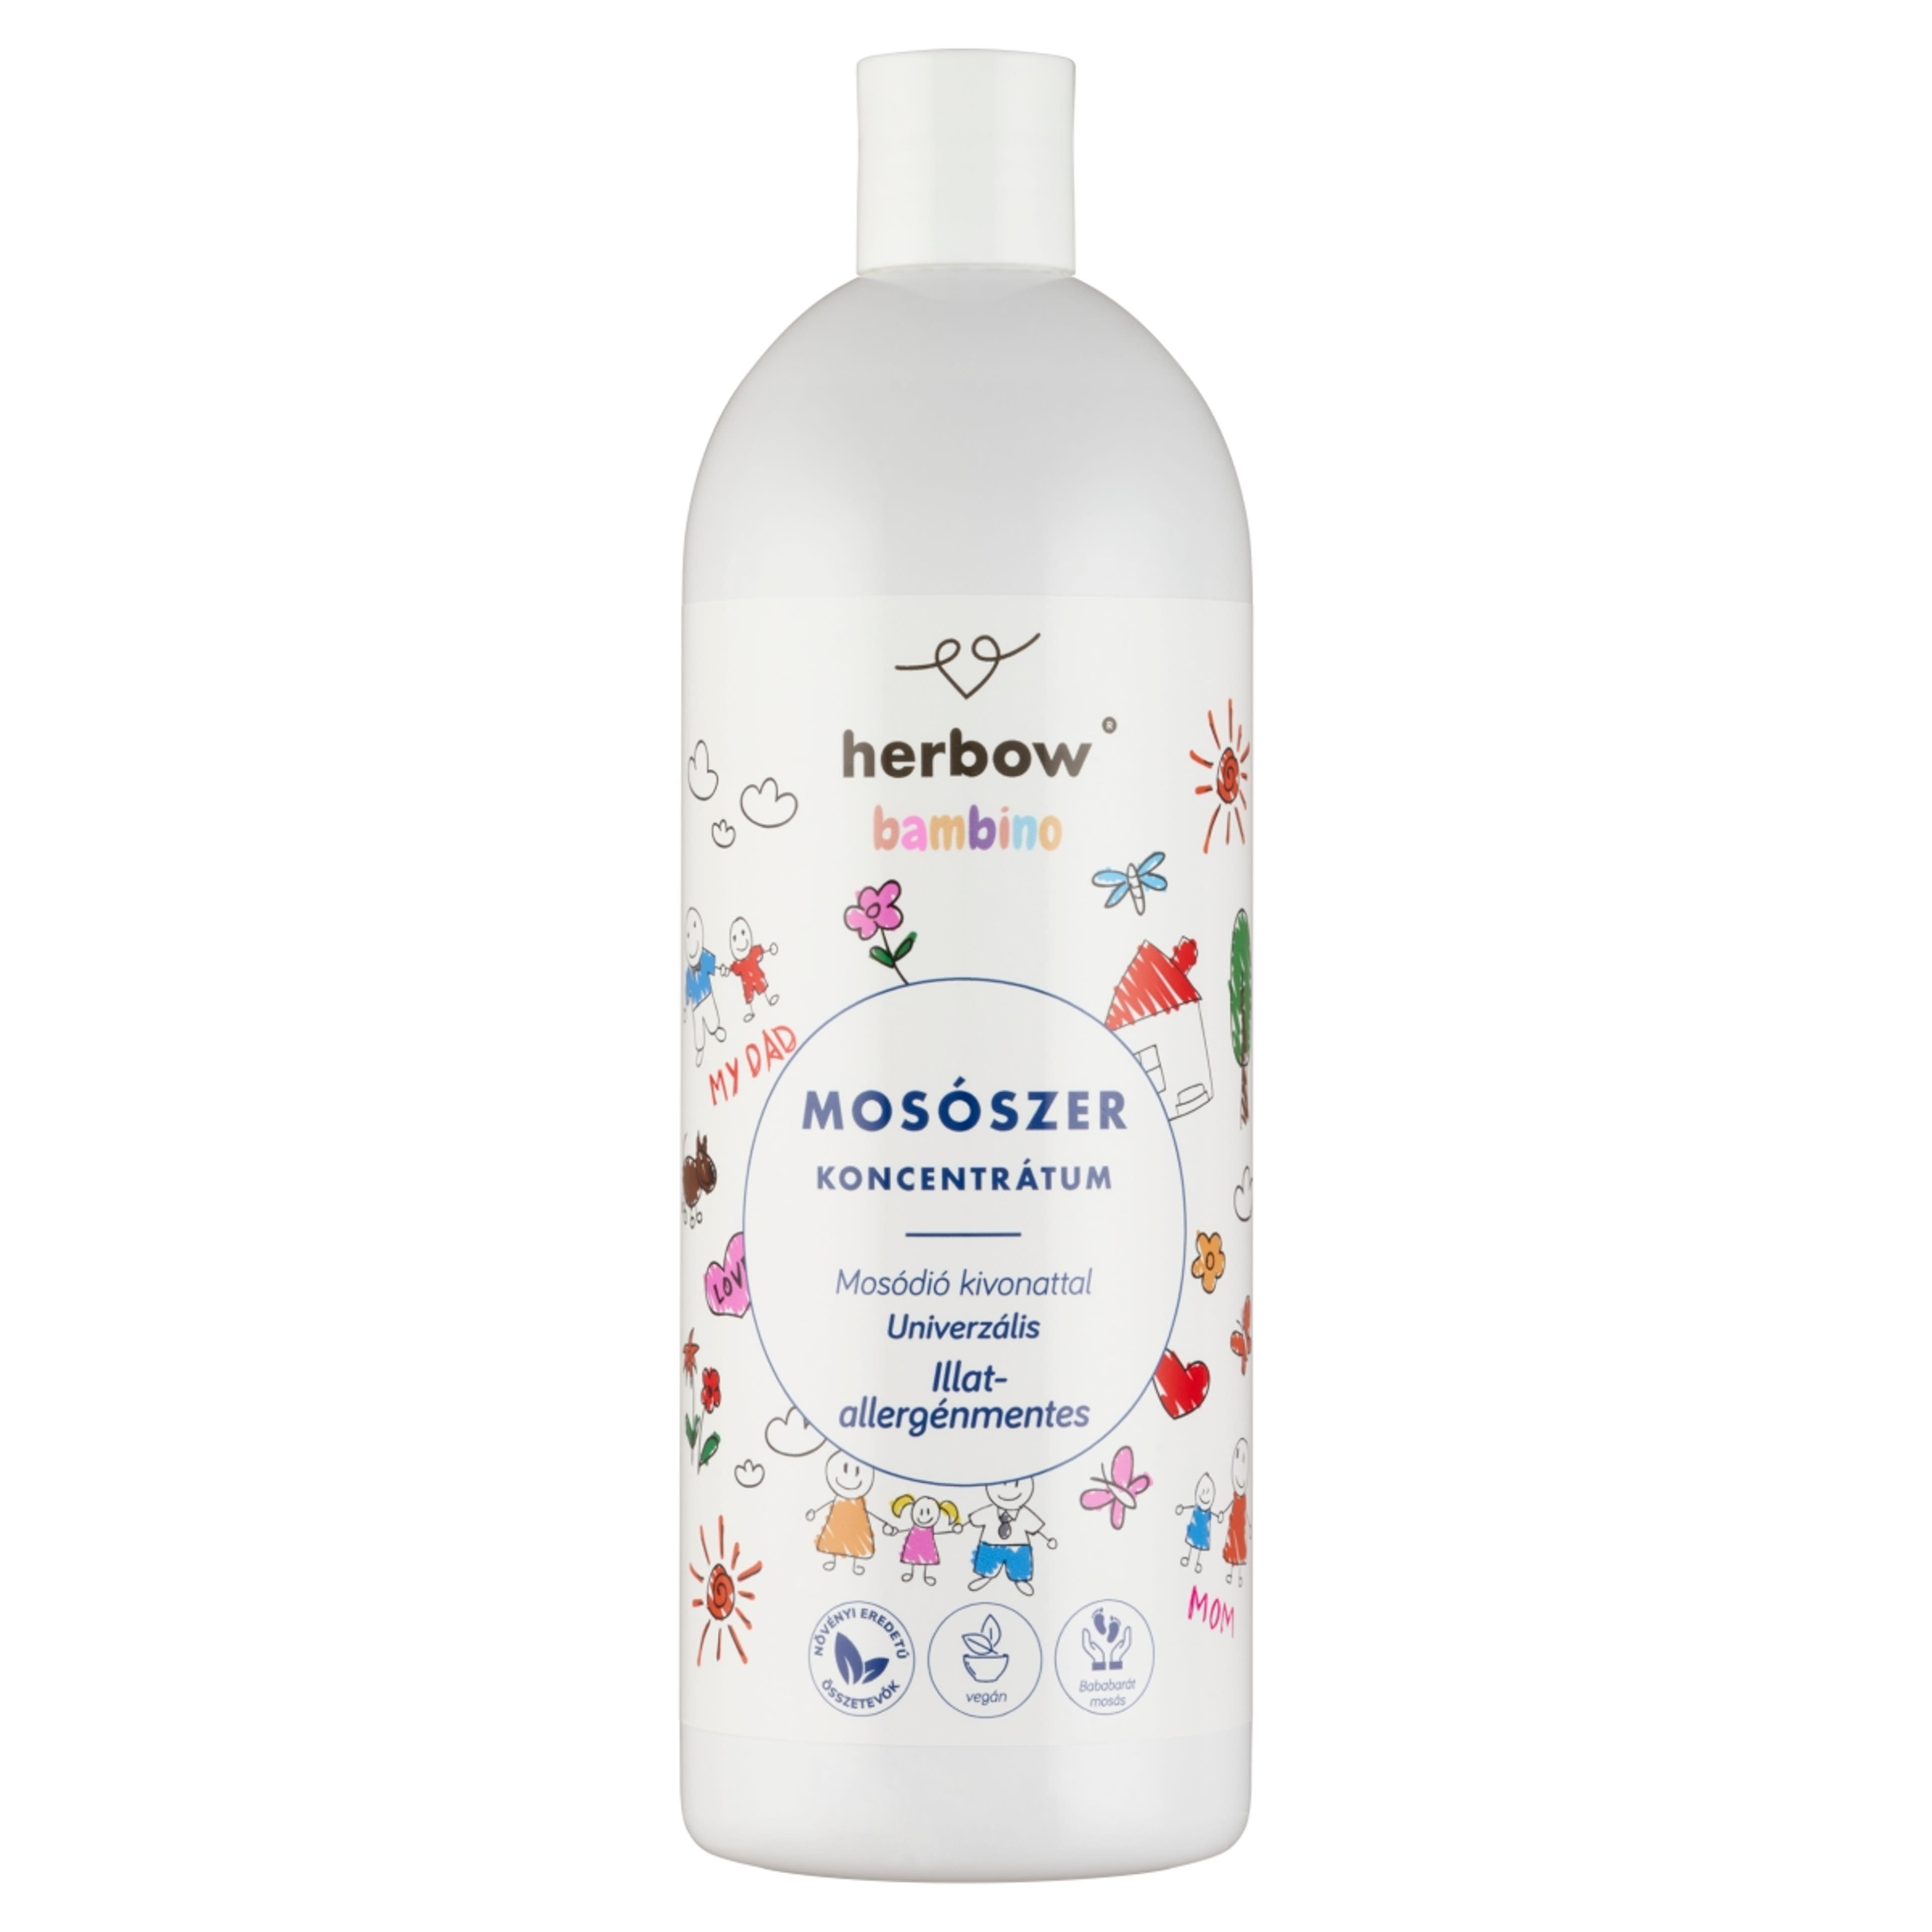 Herbow Bambino illat-allergénmentes univerzális mosószer koncentrátum - 1000 ml